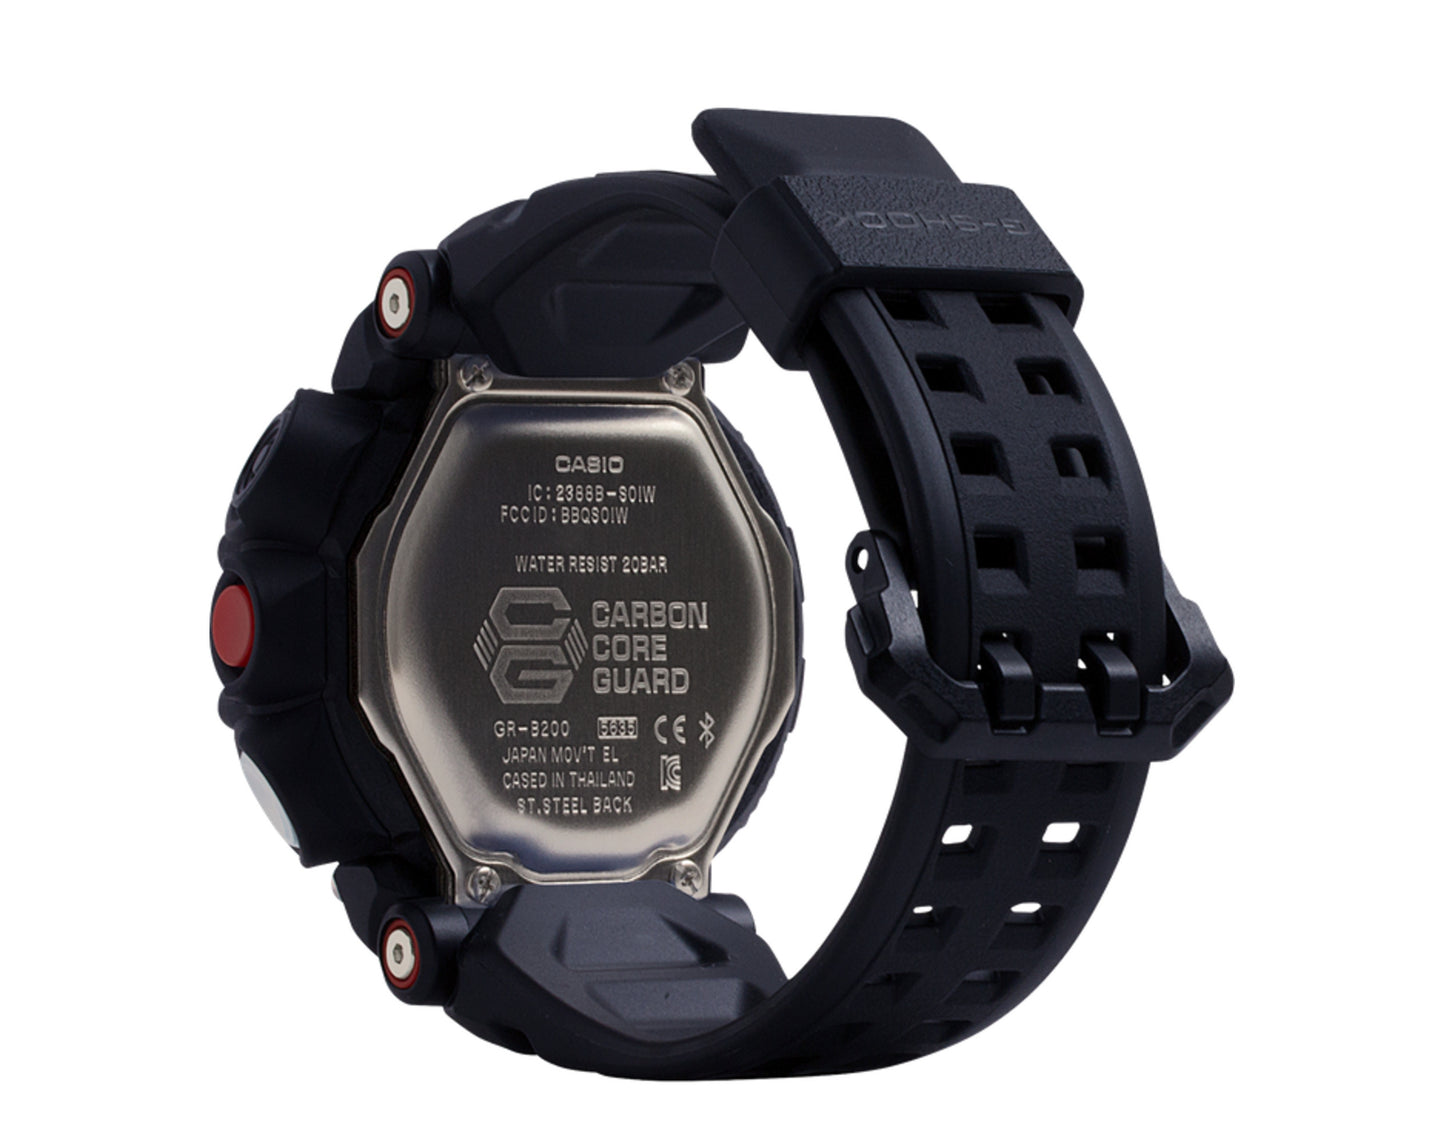 Casio G-Shock GRB200 GravityMaster Analog Digital Resin Black Watch GRB200-1A